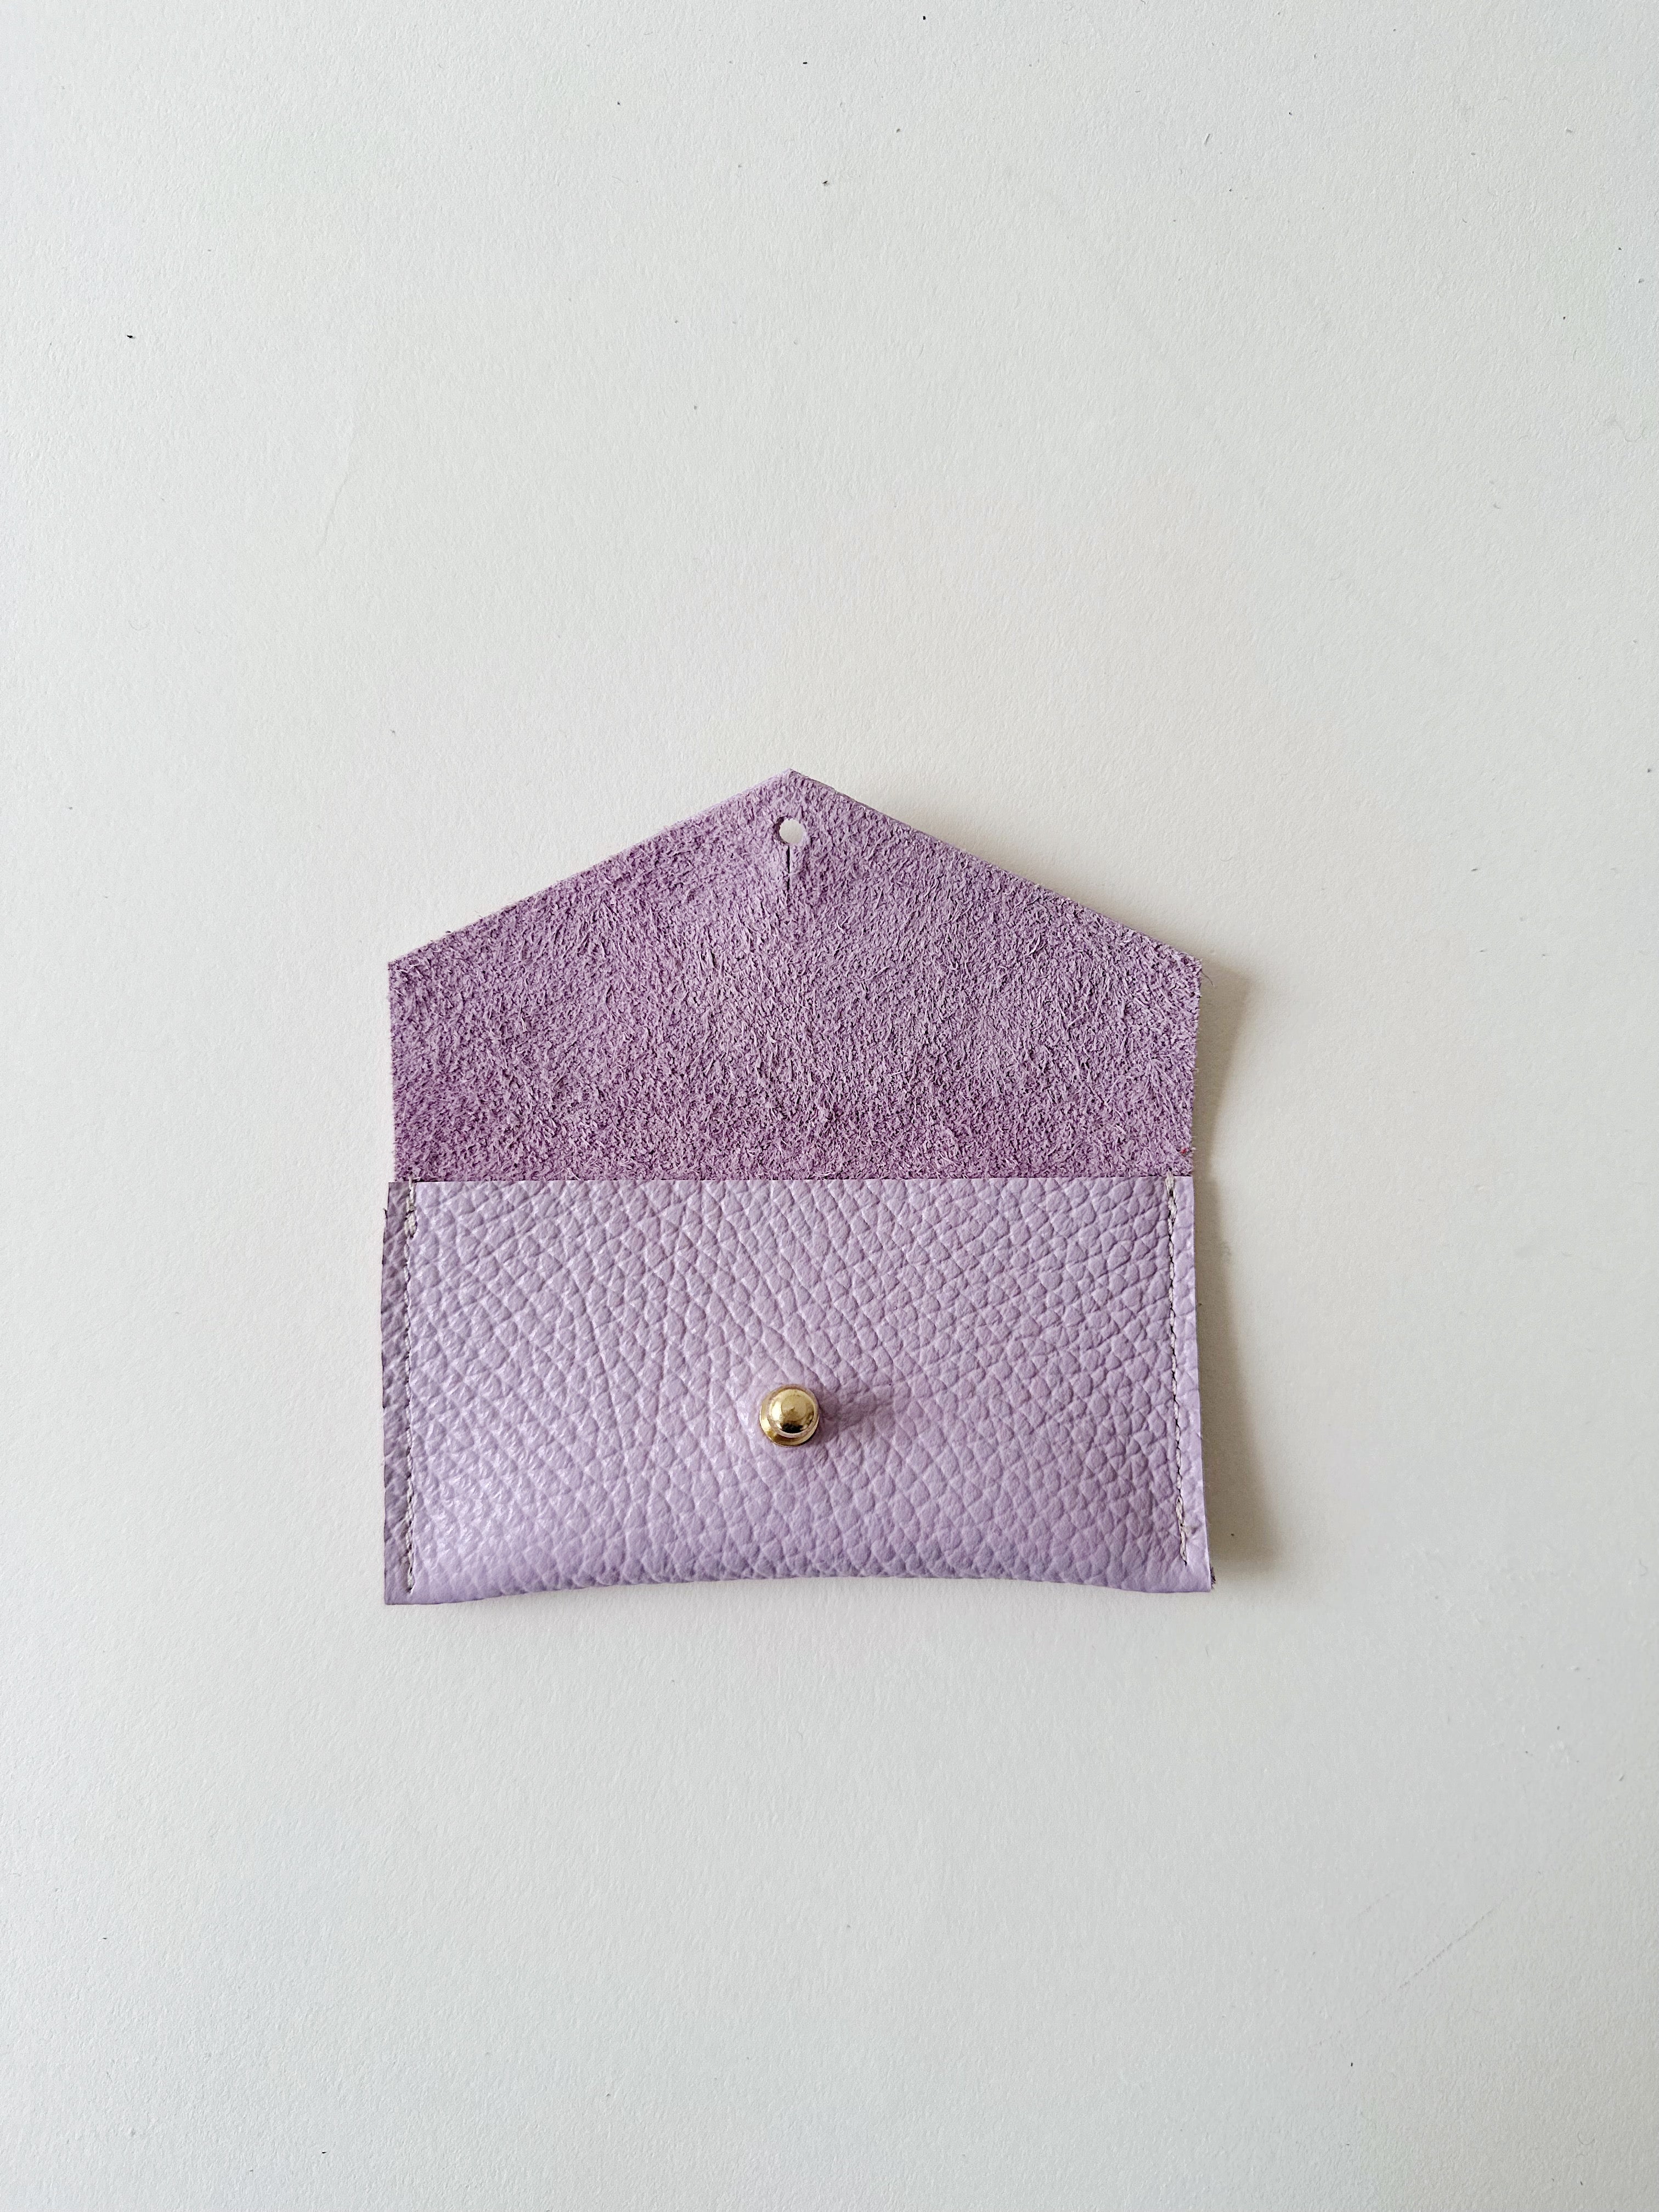 Lilac Cardholder